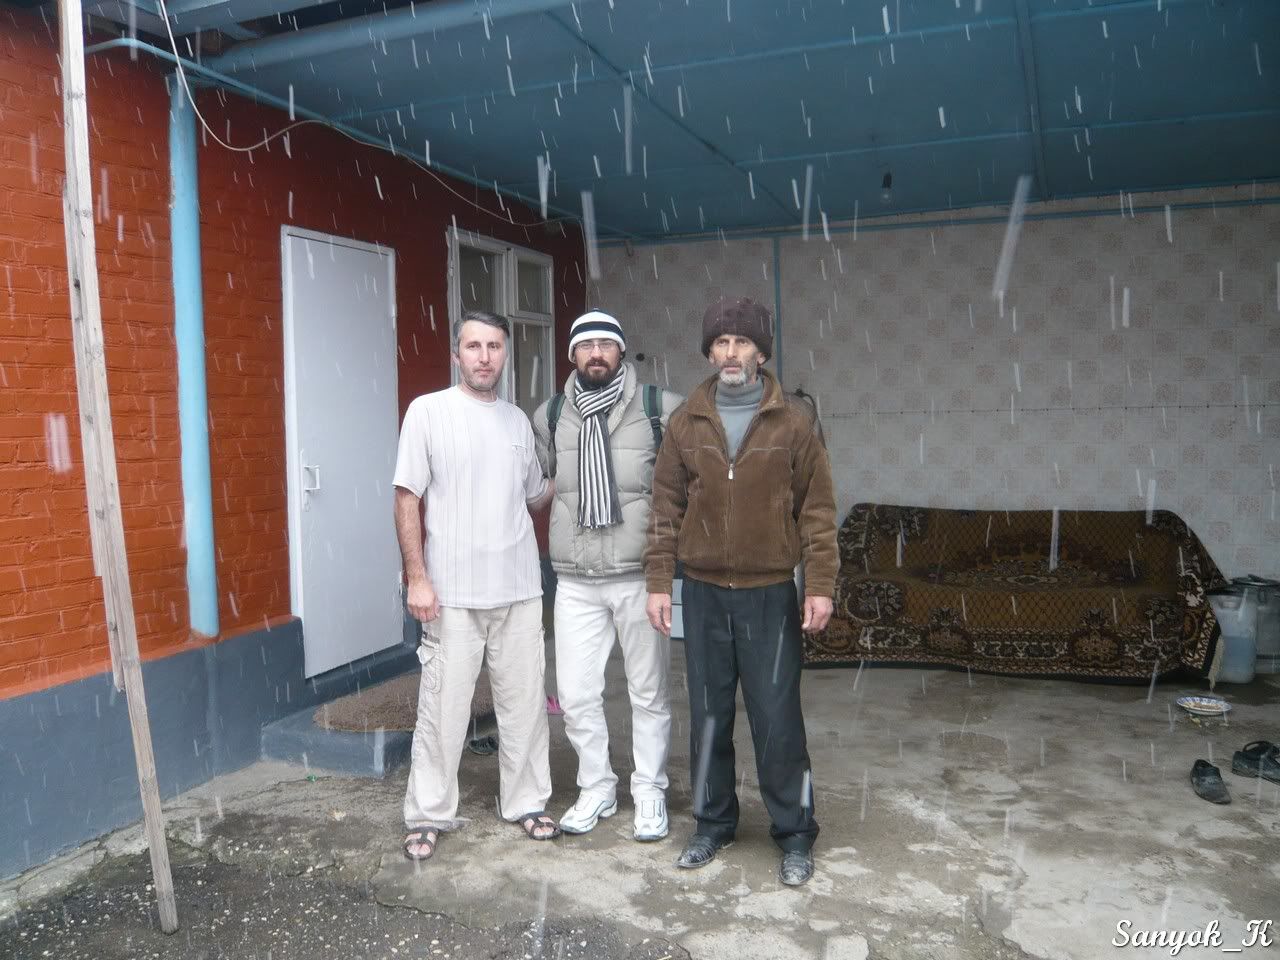 "Другая Россия". Путешествие автостопом по Дагестану, Чечне, Северной Осетии (ноябрь 2011)